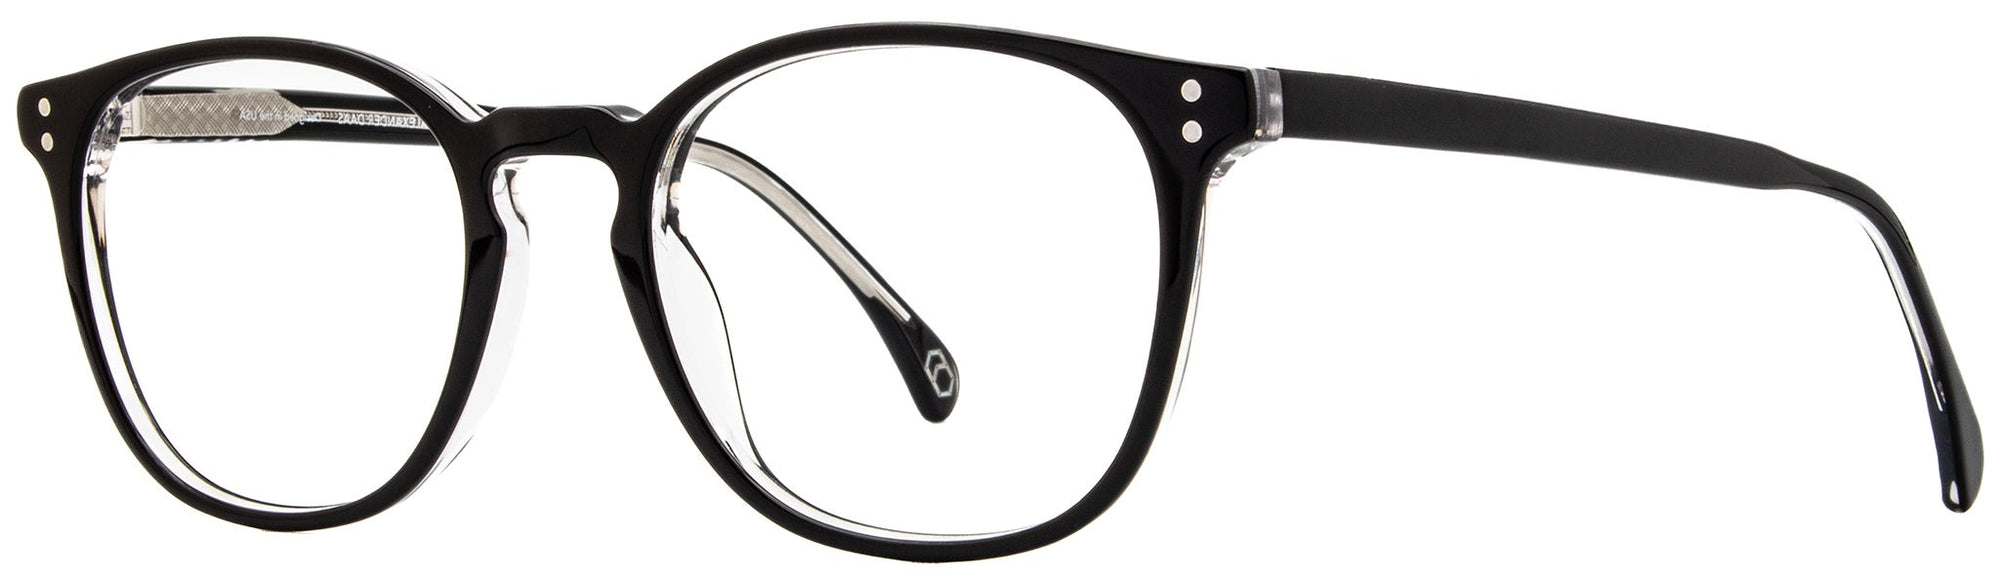 Alexander Daas - Milan Eyeglasses - Black Crystal - Side View